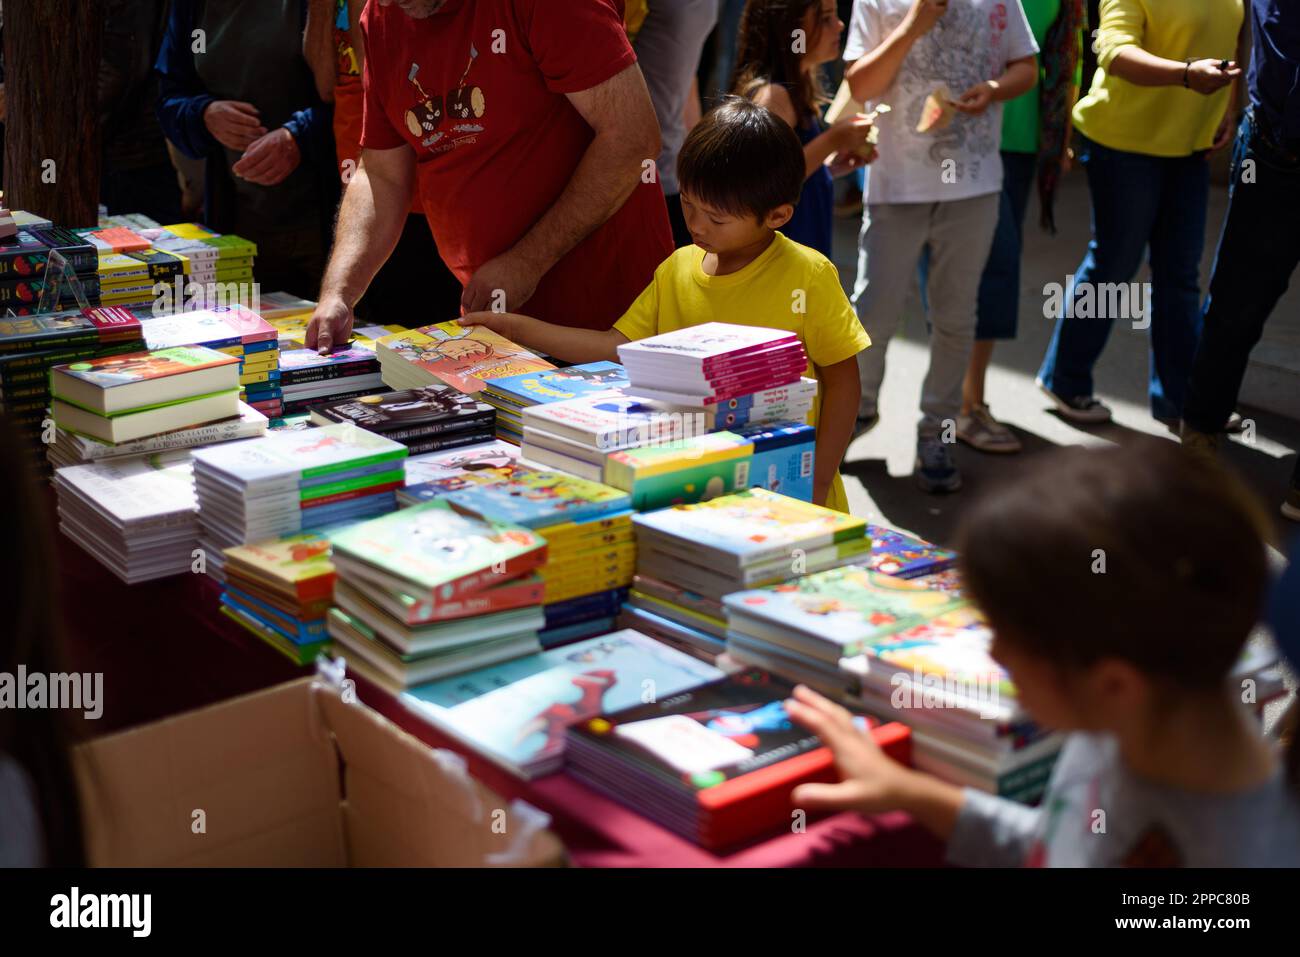 Barcelone, Espagne. 23rd avril 2023. Les enfants sont vus acheter des livres dans une cabine pendant la fête catalane traditionnelle de Saint George's Day. Ce jour-là, connu sous le nom de « jour de Saint-Georges » (Diada de Sant Jordi en catalan), l'amour et la littérature sont célébrés par la vente de livres et de roses rouges dans tout le pays. Depuis l'année 1997, le slogan officiel de ce jour a été "Une rose pour l'amour, et un livre pour toujours". Crédit : SOPA Images Limited/Alamy Live News Banque D'Images